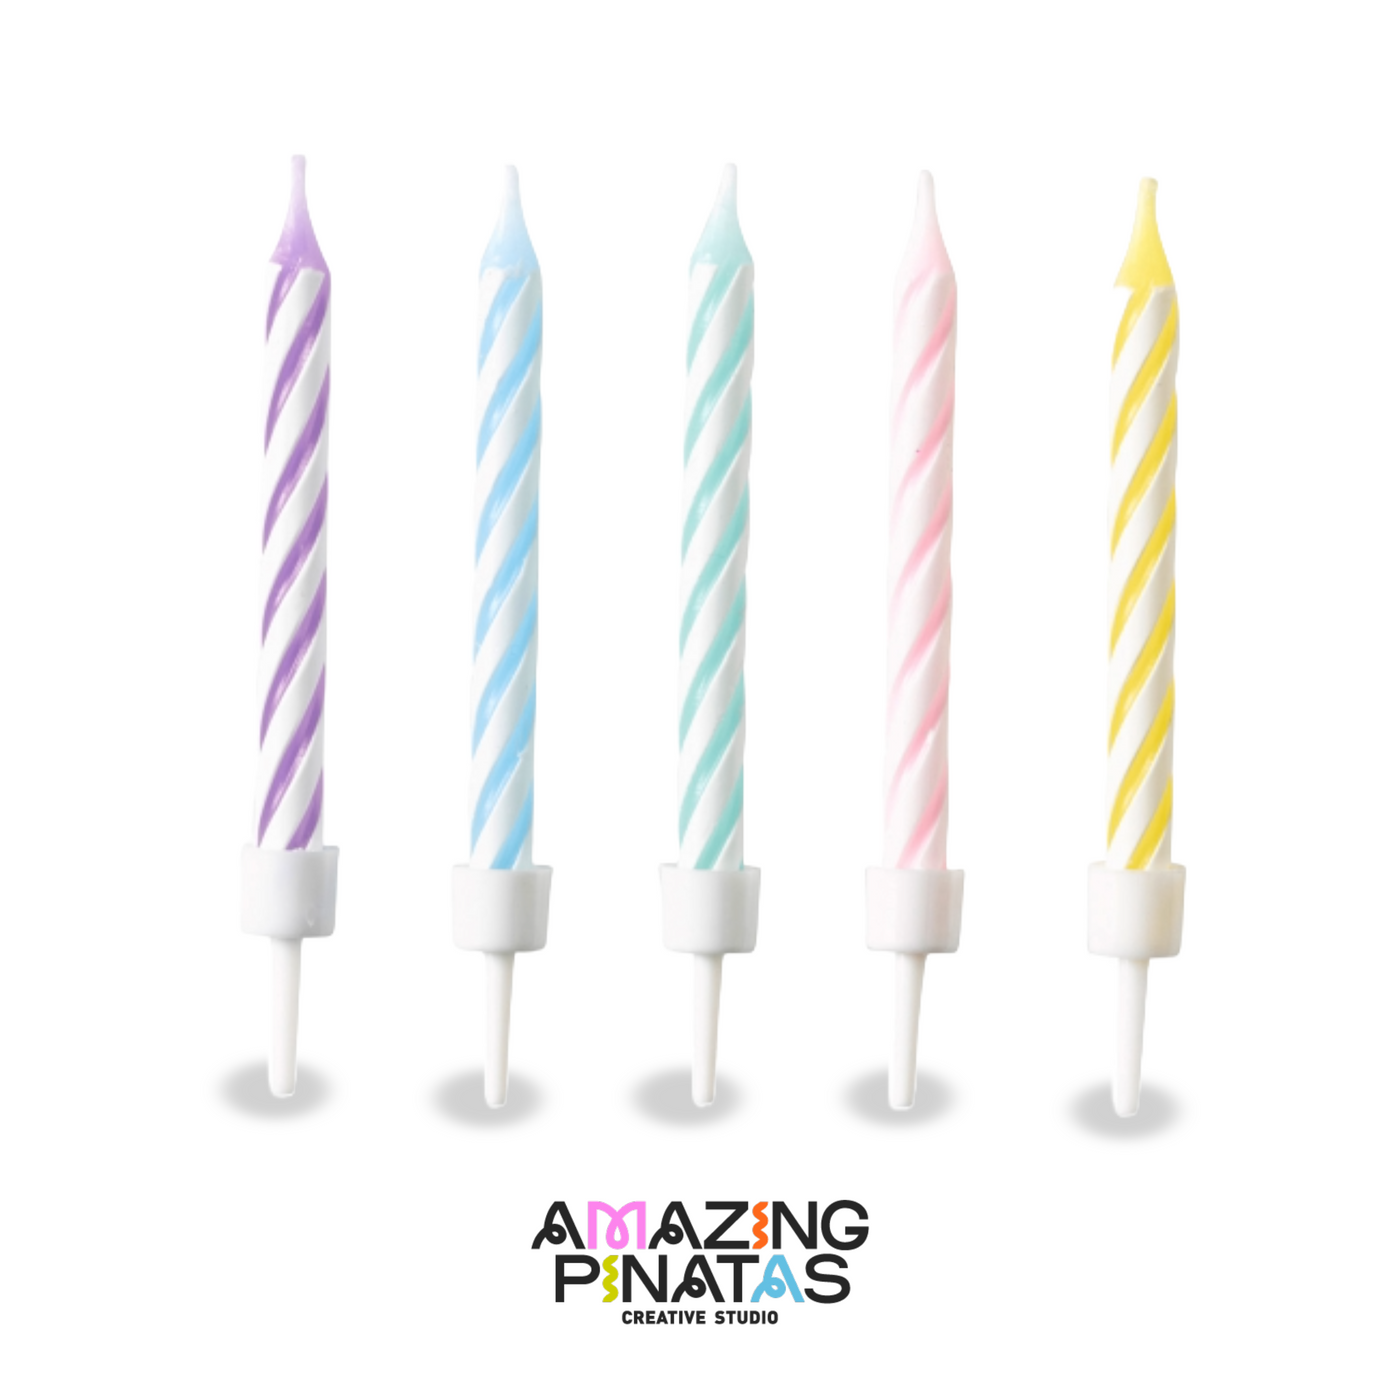 Pastel Swirl Birthday Candles - Amazing Pinatas 